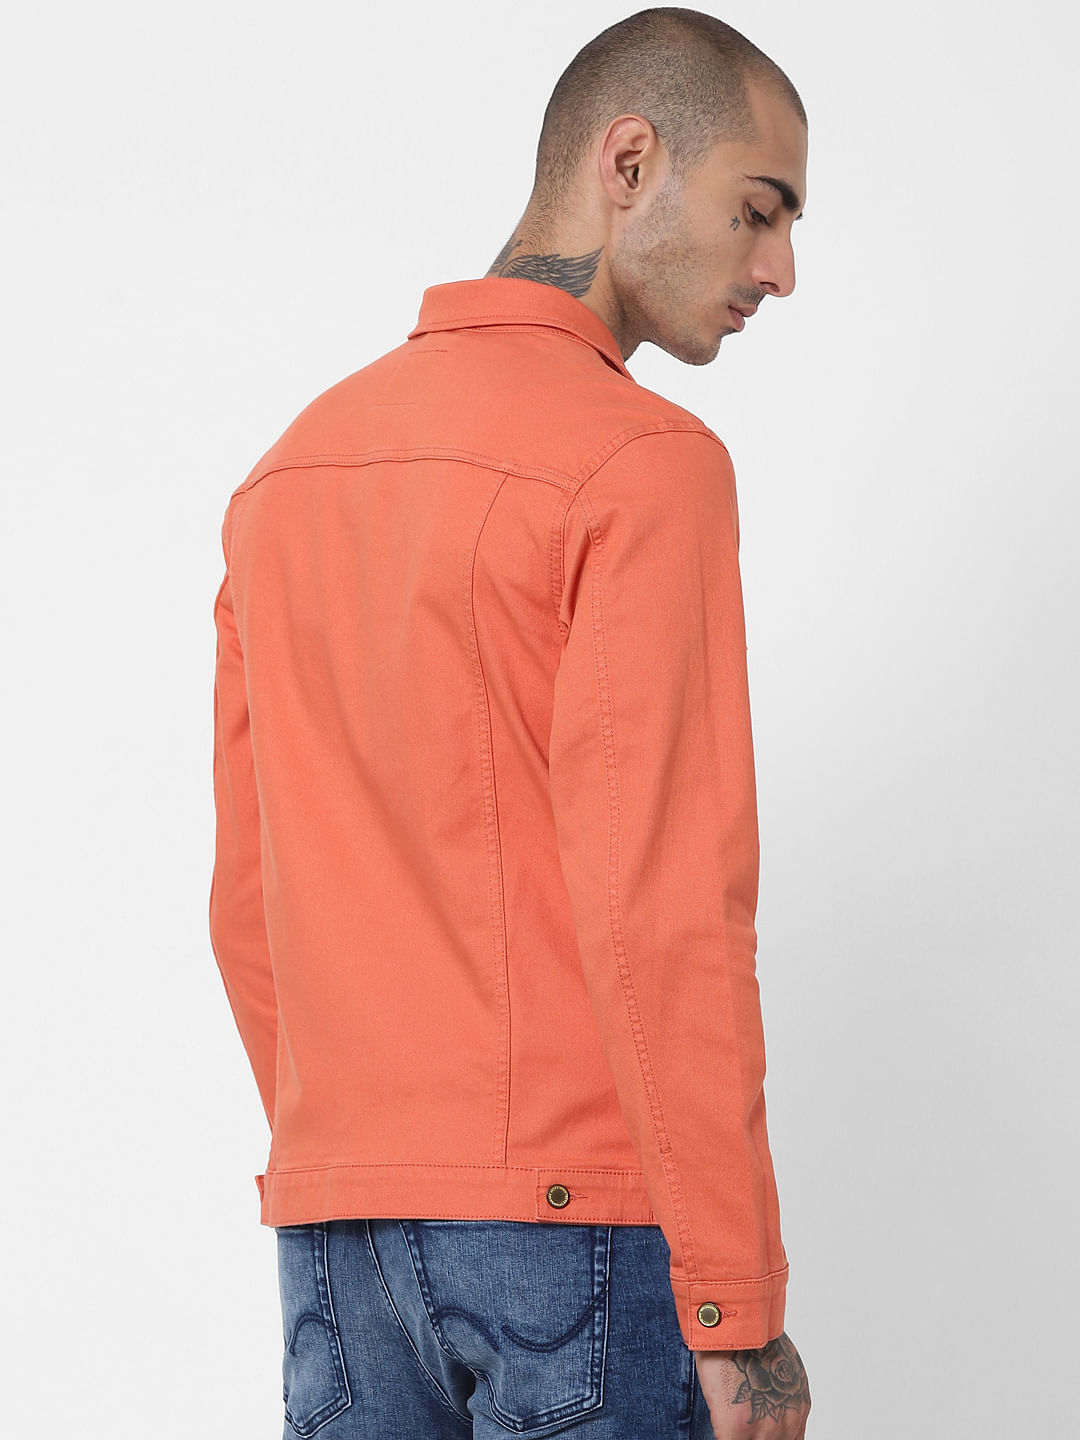 Jacket With Orange Hood  Denim Jackets  Edifactory UK  Cropped   Oversized Denim Jackets